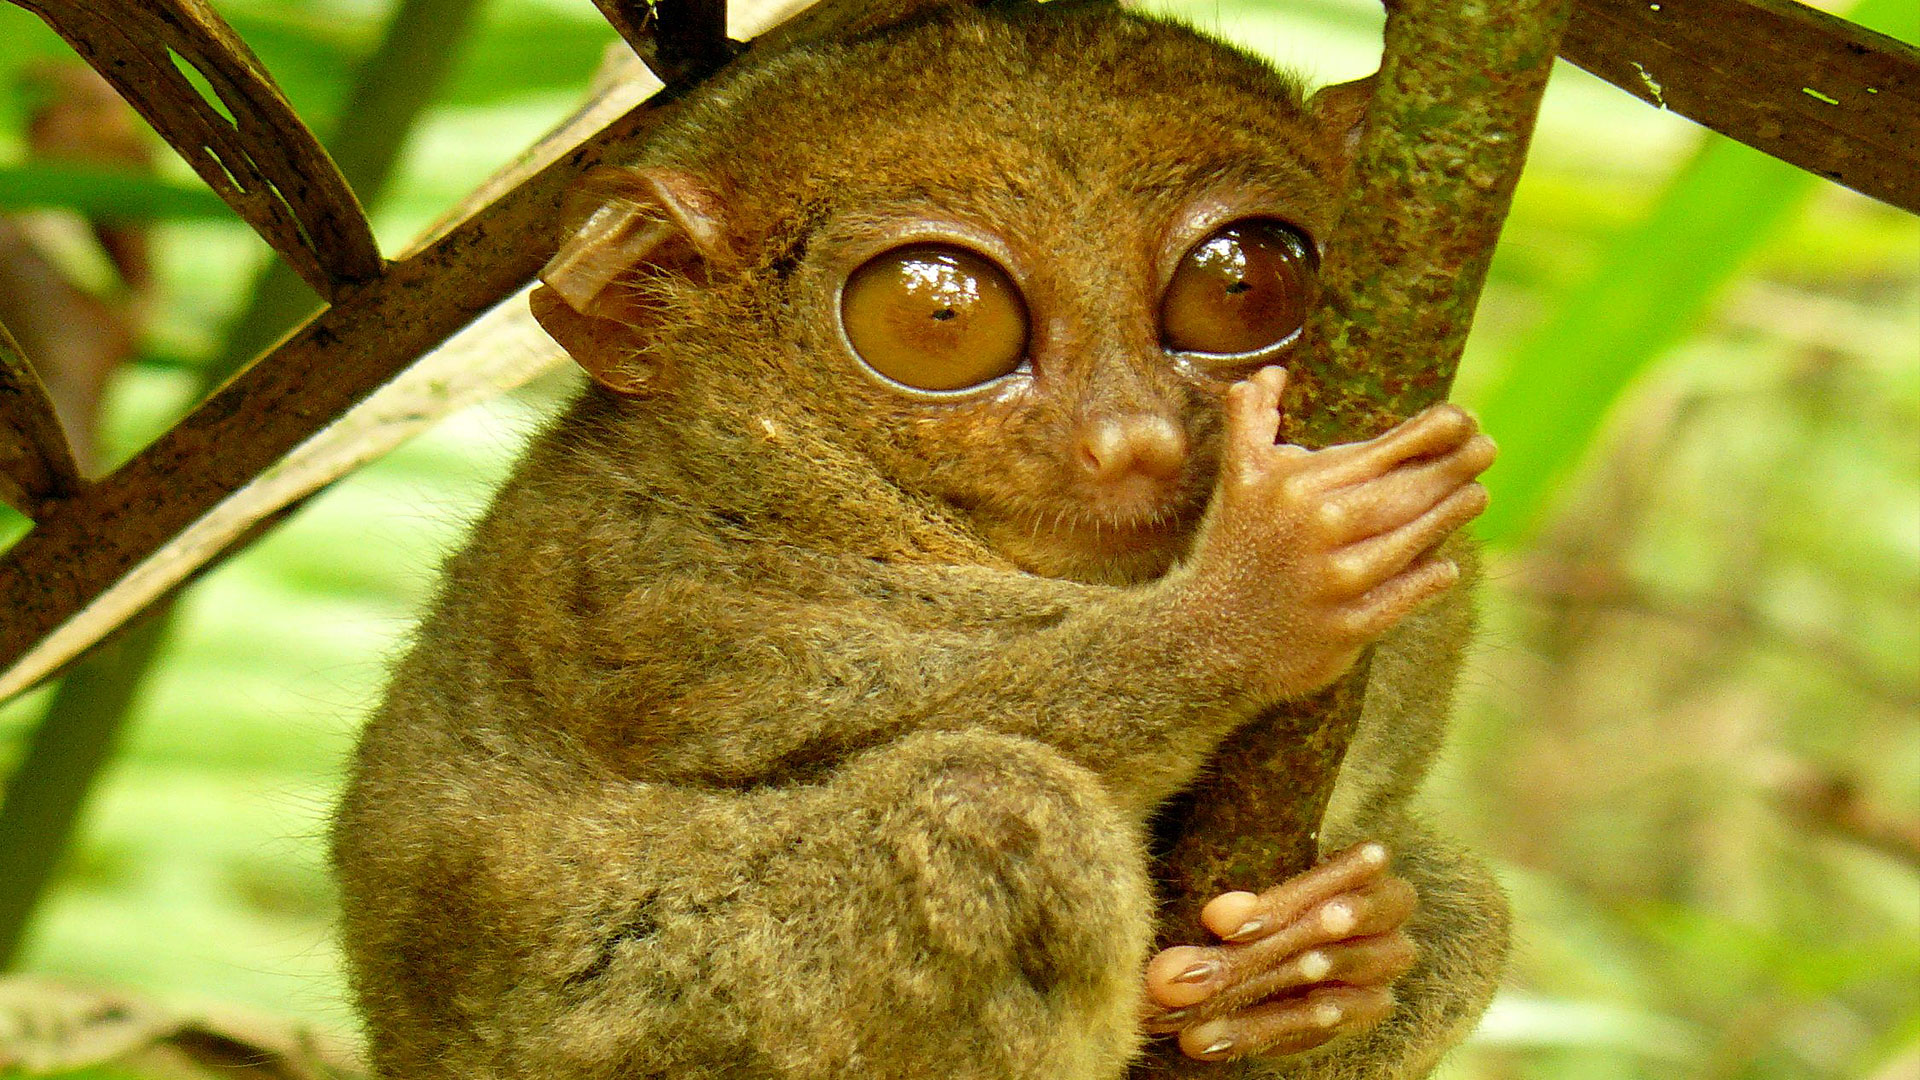 Le tarsier des Philippines, petit primate au cou élastique. Le tarsier des Philippines (Tarsius syrichta) est, comme son nom l’indique, une espèce endémique des Philippines. Il est incapable de bouger ses yeux mais peut tourner sa tête de 180 degrés. C’est l’un des plus petits primates du monde. Poids : entre 120 et 140 g Taille : entre 8 et 16 cm © Roberto Verzo, Flickr, cc by 2.0